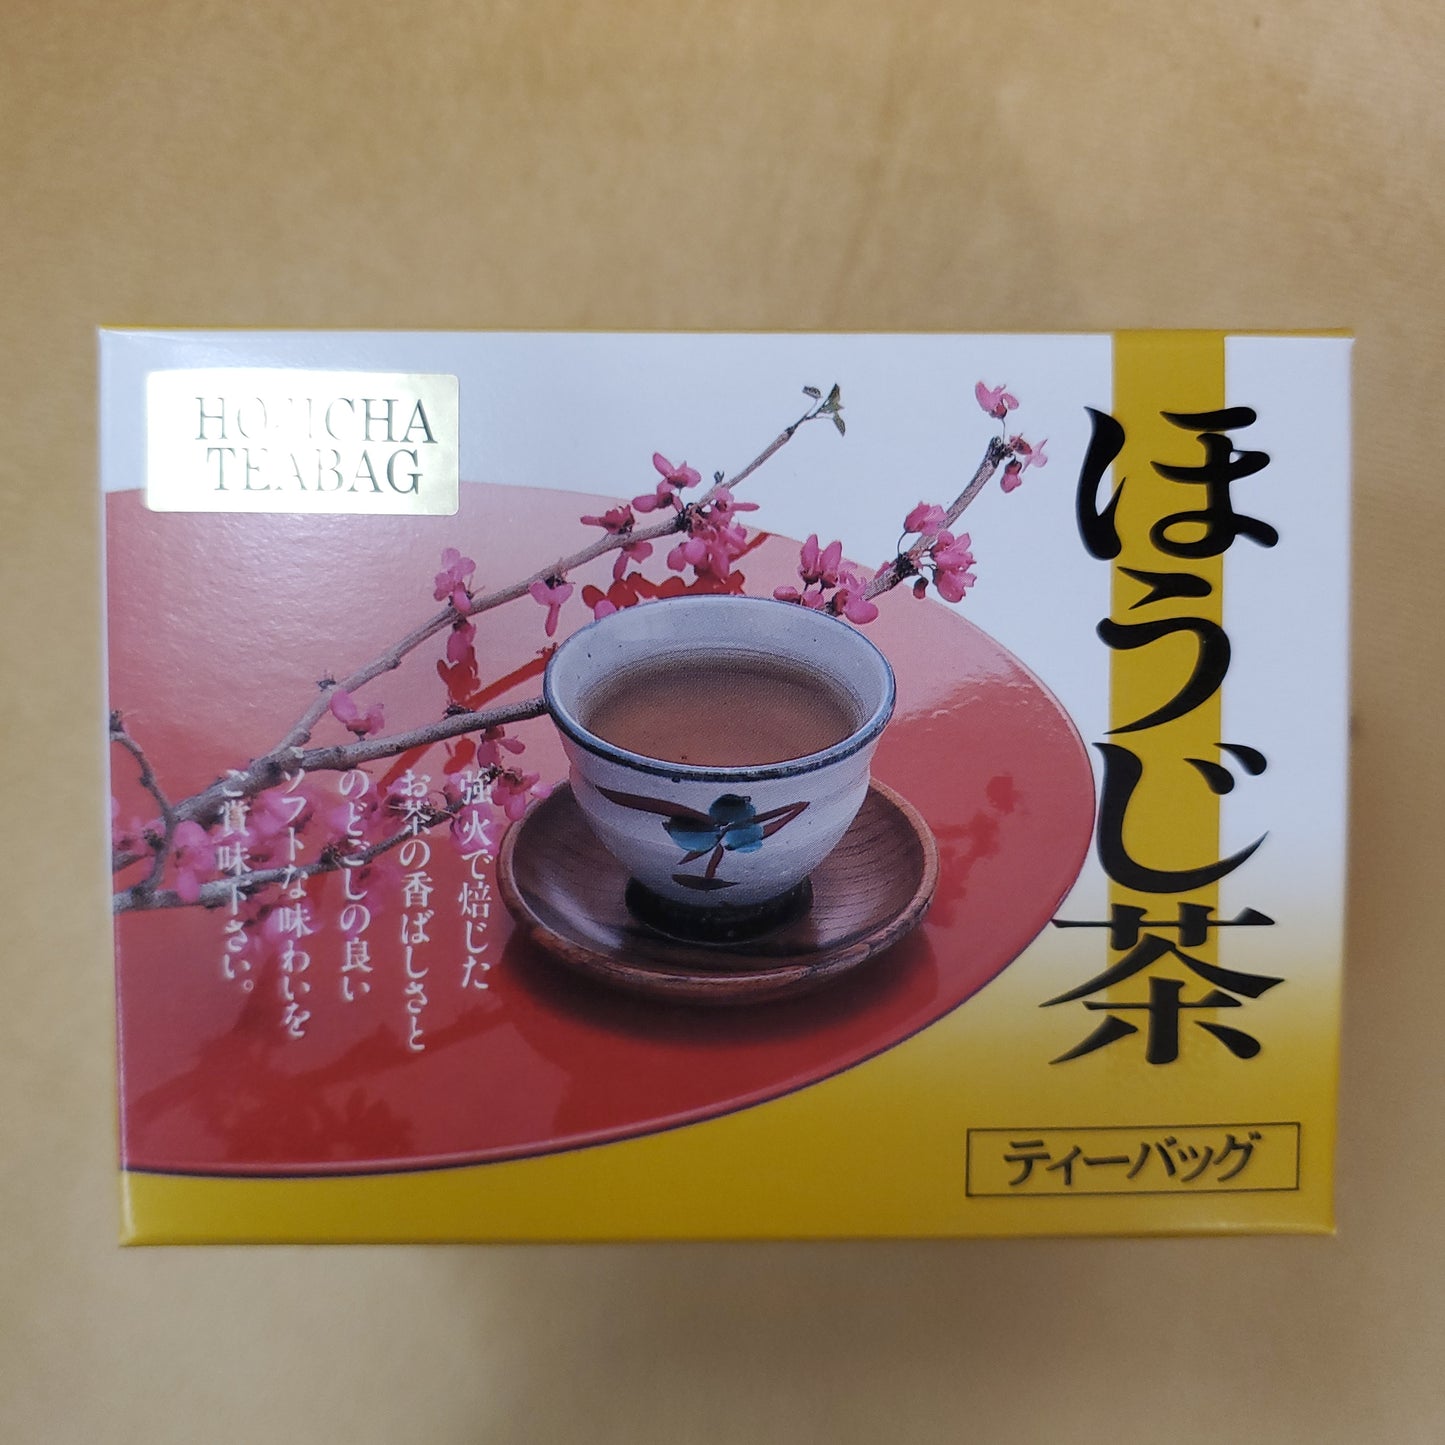 Otsuka Hoji Cha Tea Bag (15 Sachets) 大塚焙茶茶包